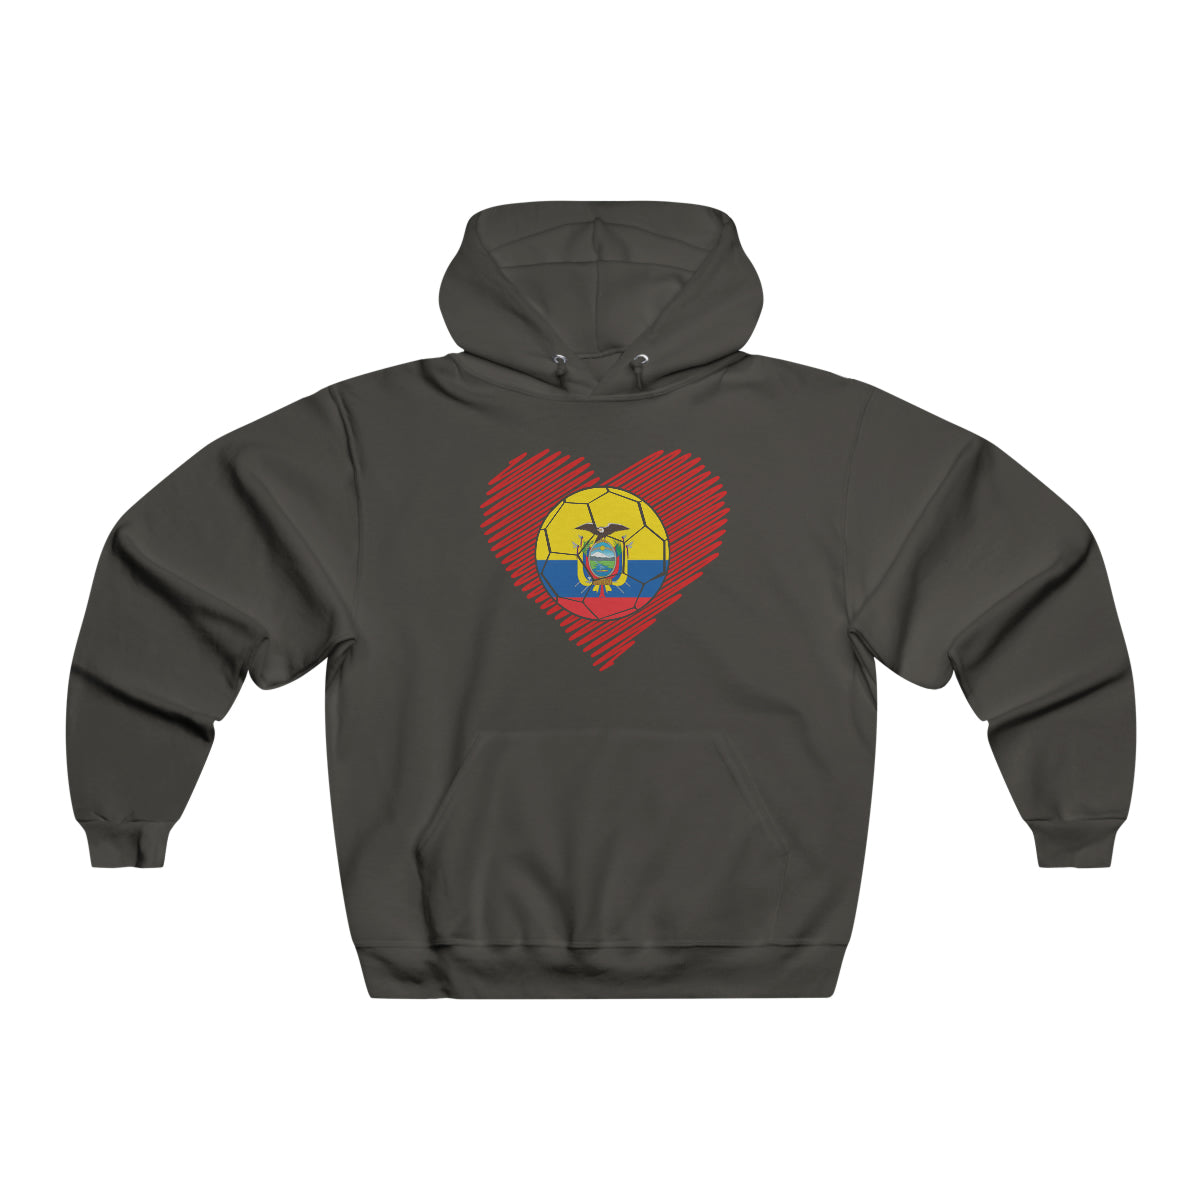 Ecuador Hooded Sweatshirt